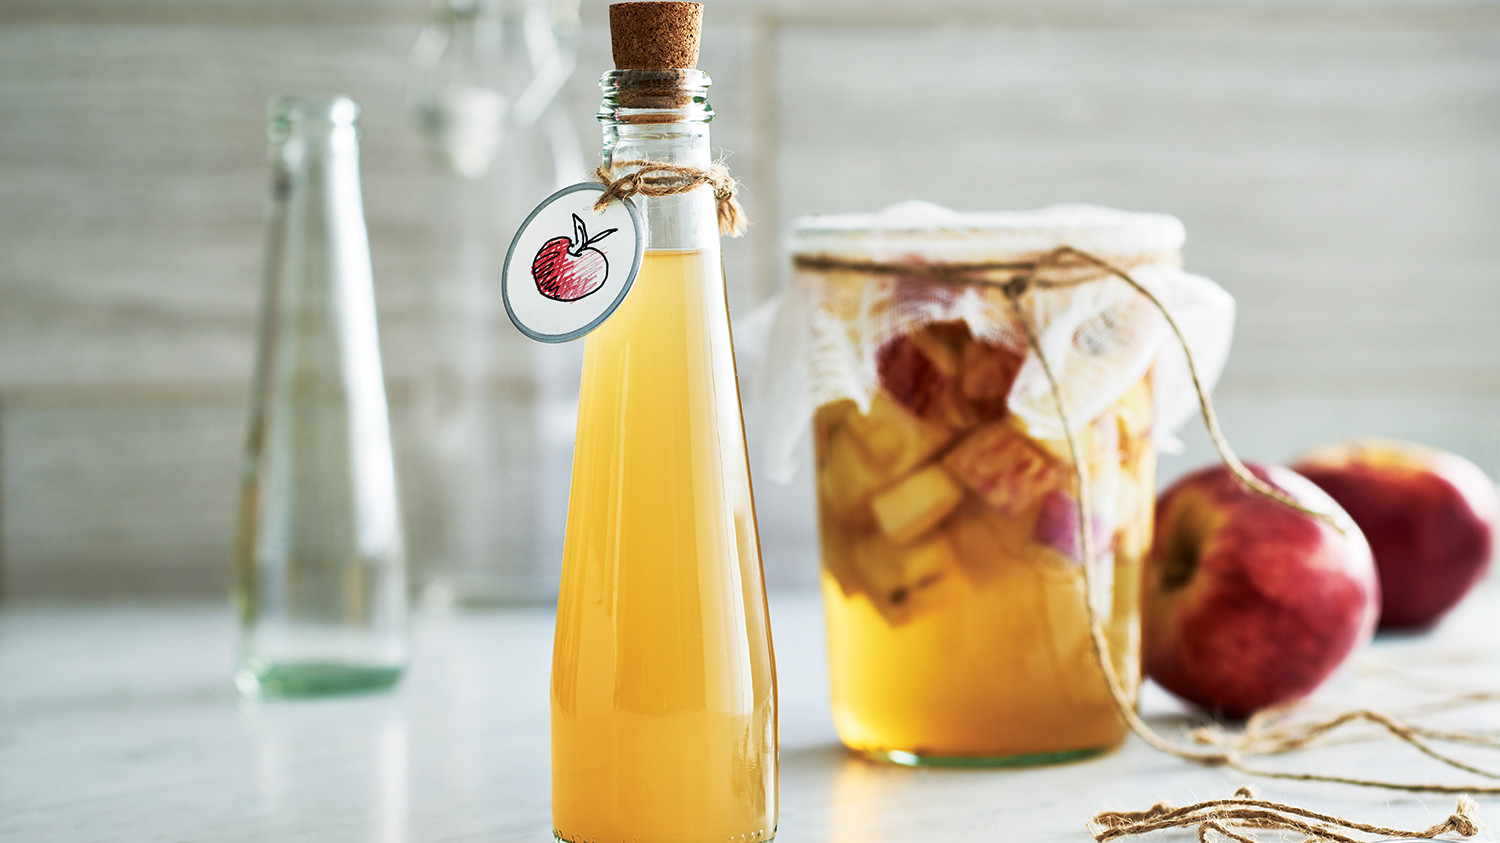 Best ideas about DIY Apple Cider Vinegar
. Save or Pin Homemade Apple Cider Vinegar Sobeys Inc Now.